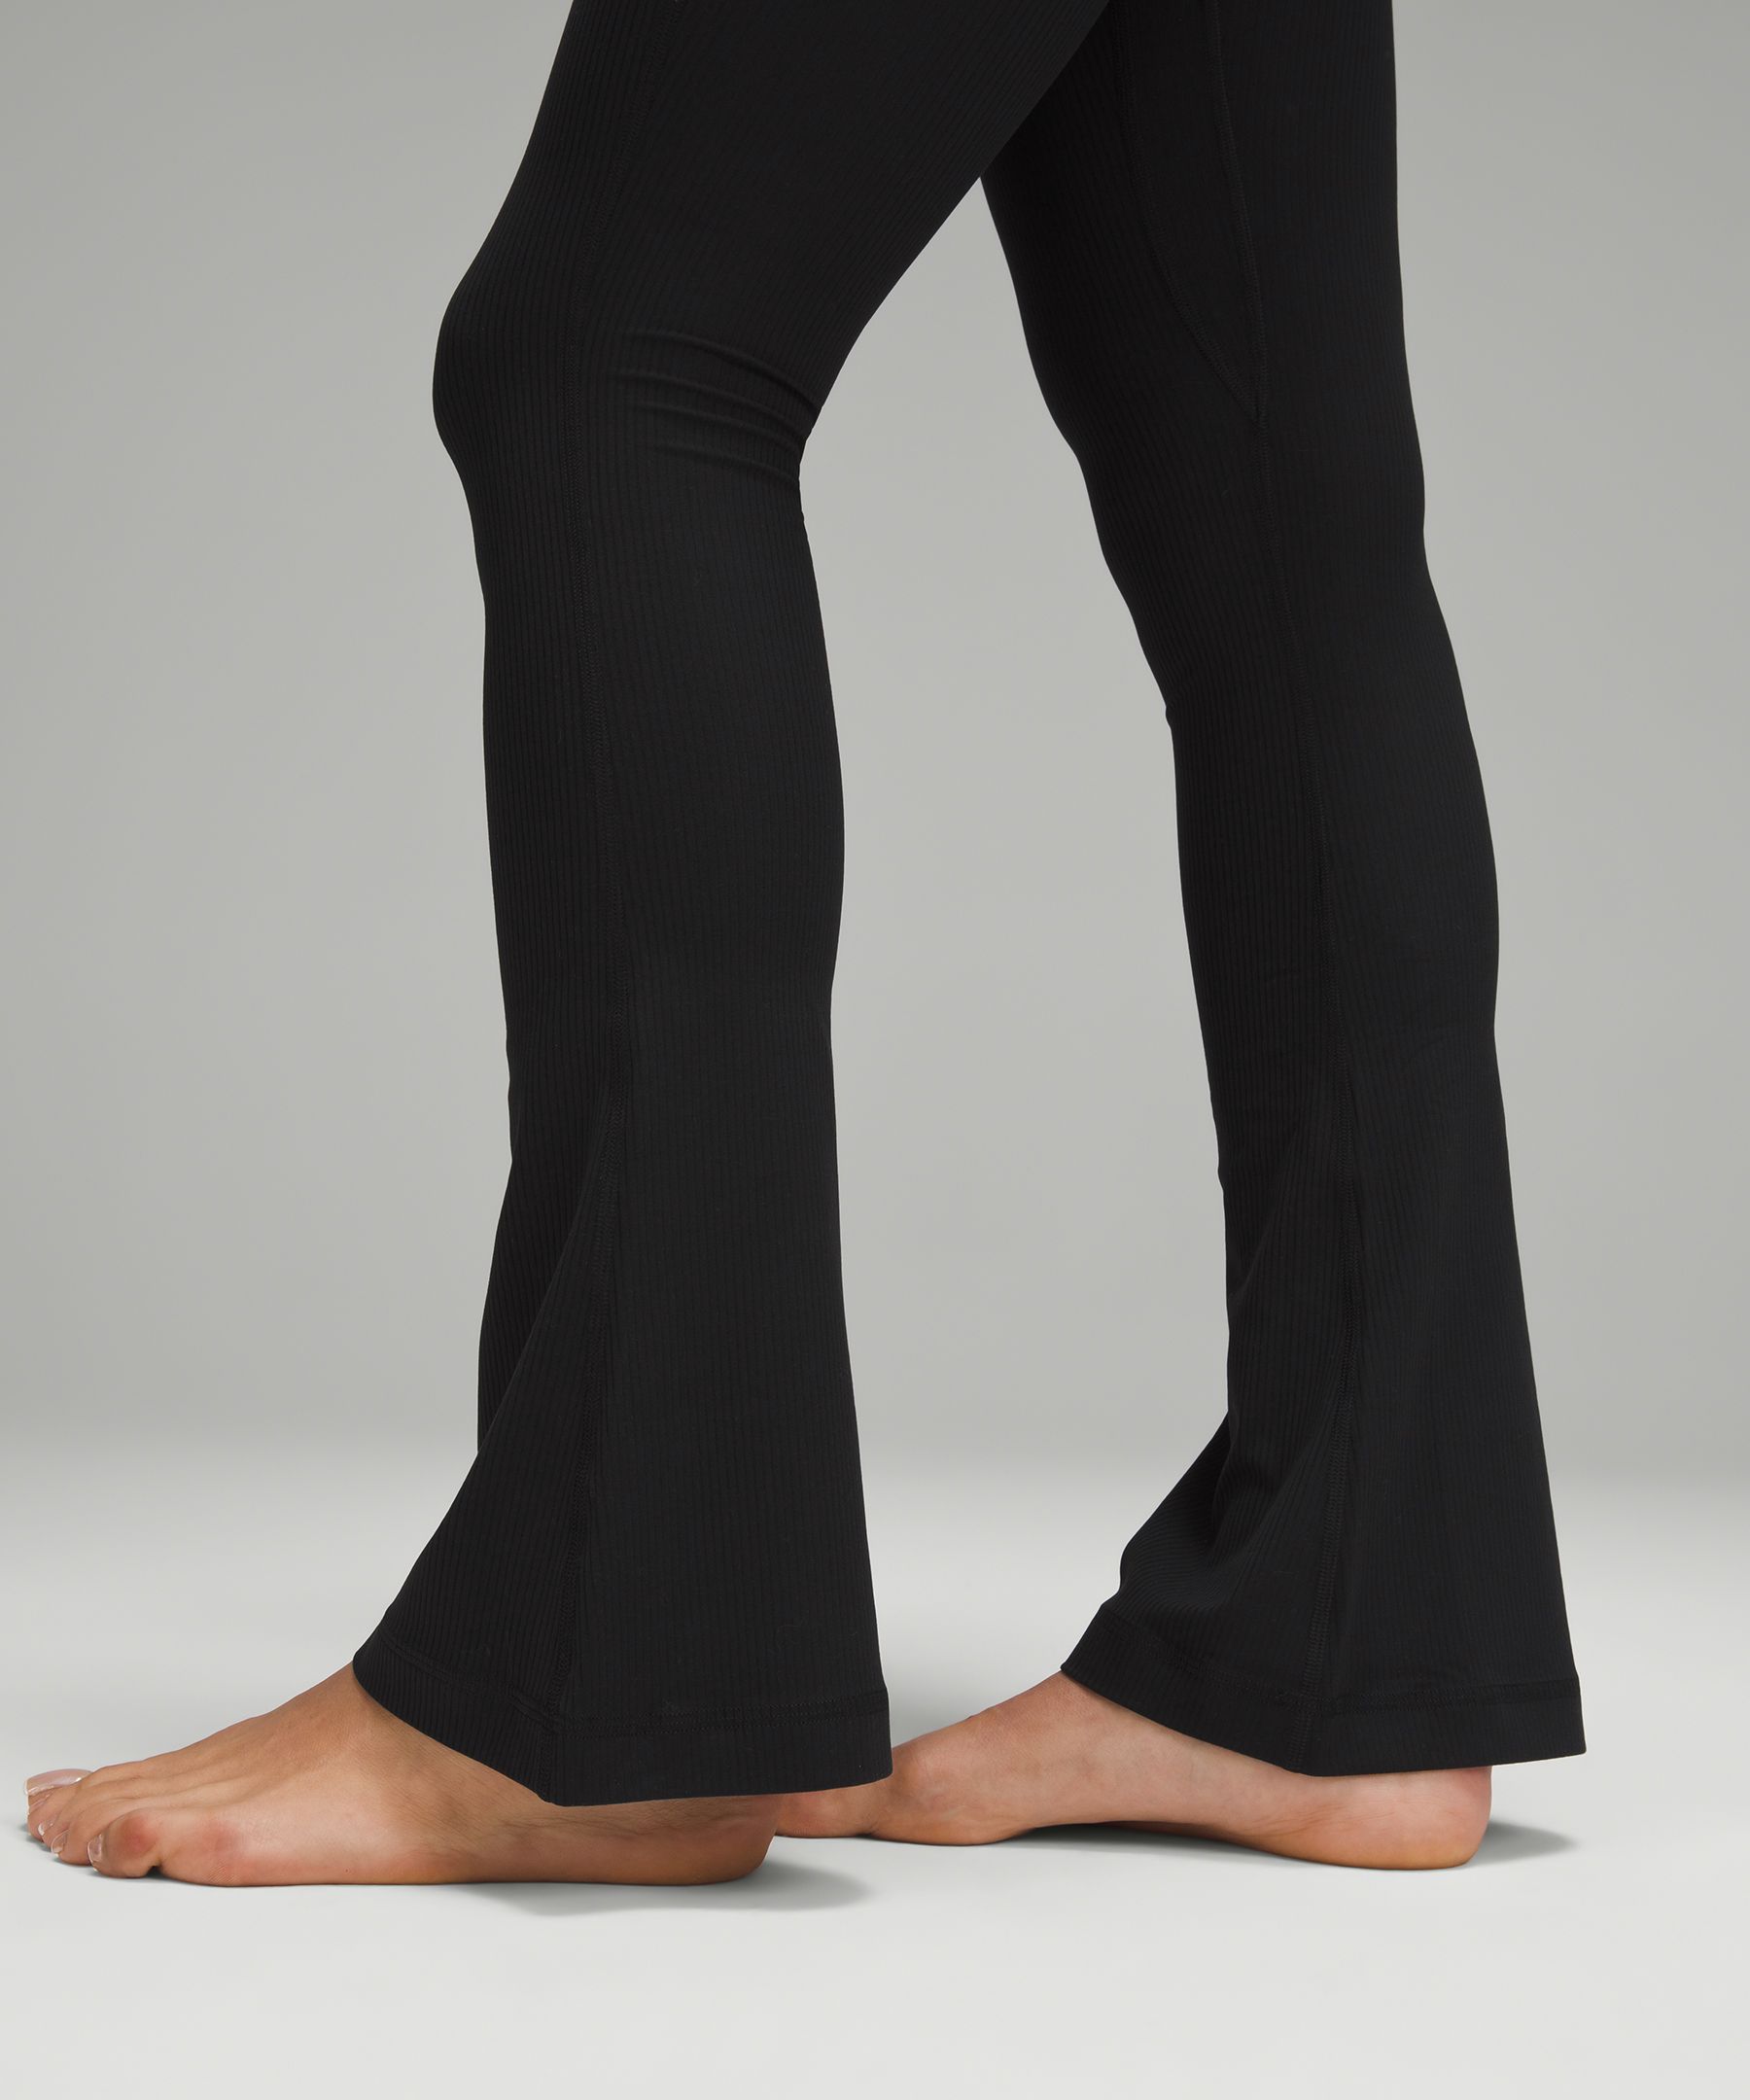 Lululemon Align™ High-Rise Mini-Flared Pant *Regular, Women's Leggings/ Tights